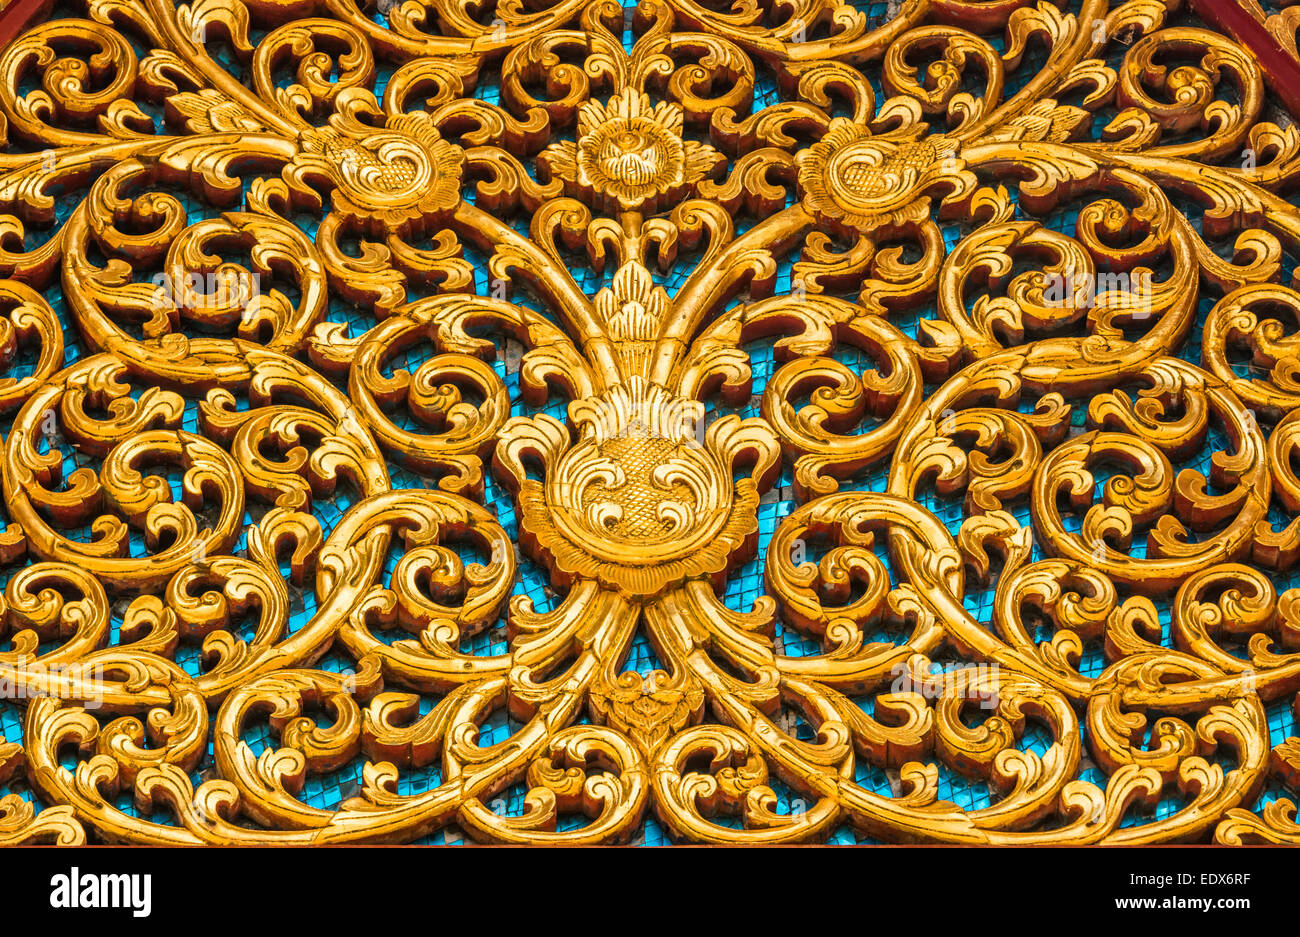 Adornos de pared dorado de estilo tailandés Foto de stock